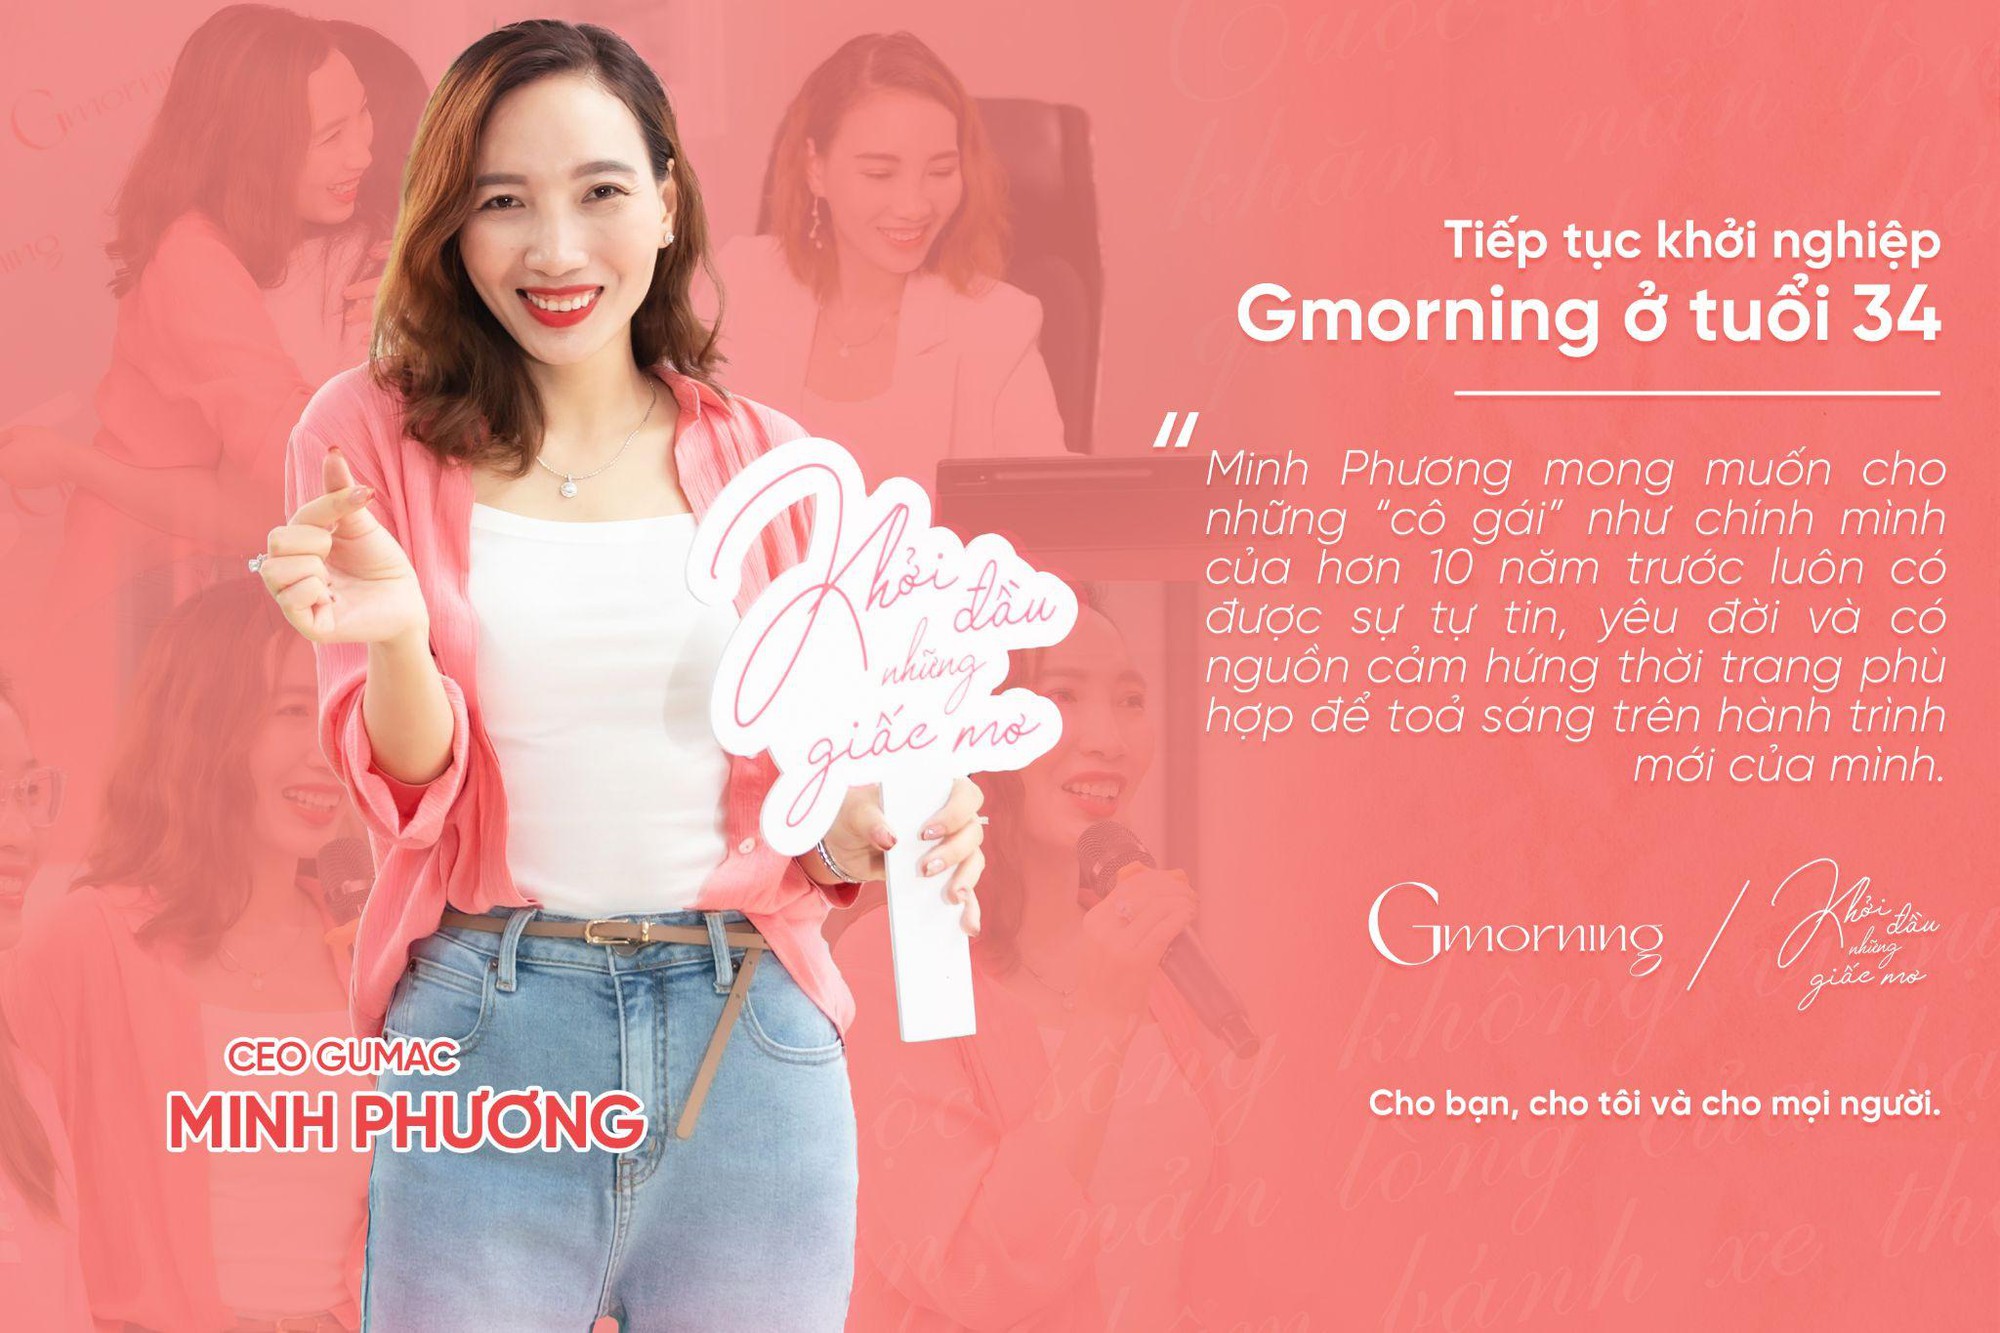 GUMAC ra mắt thương hiệu mới Gmorning hướng đến giới trẻ - Ảnh 1.